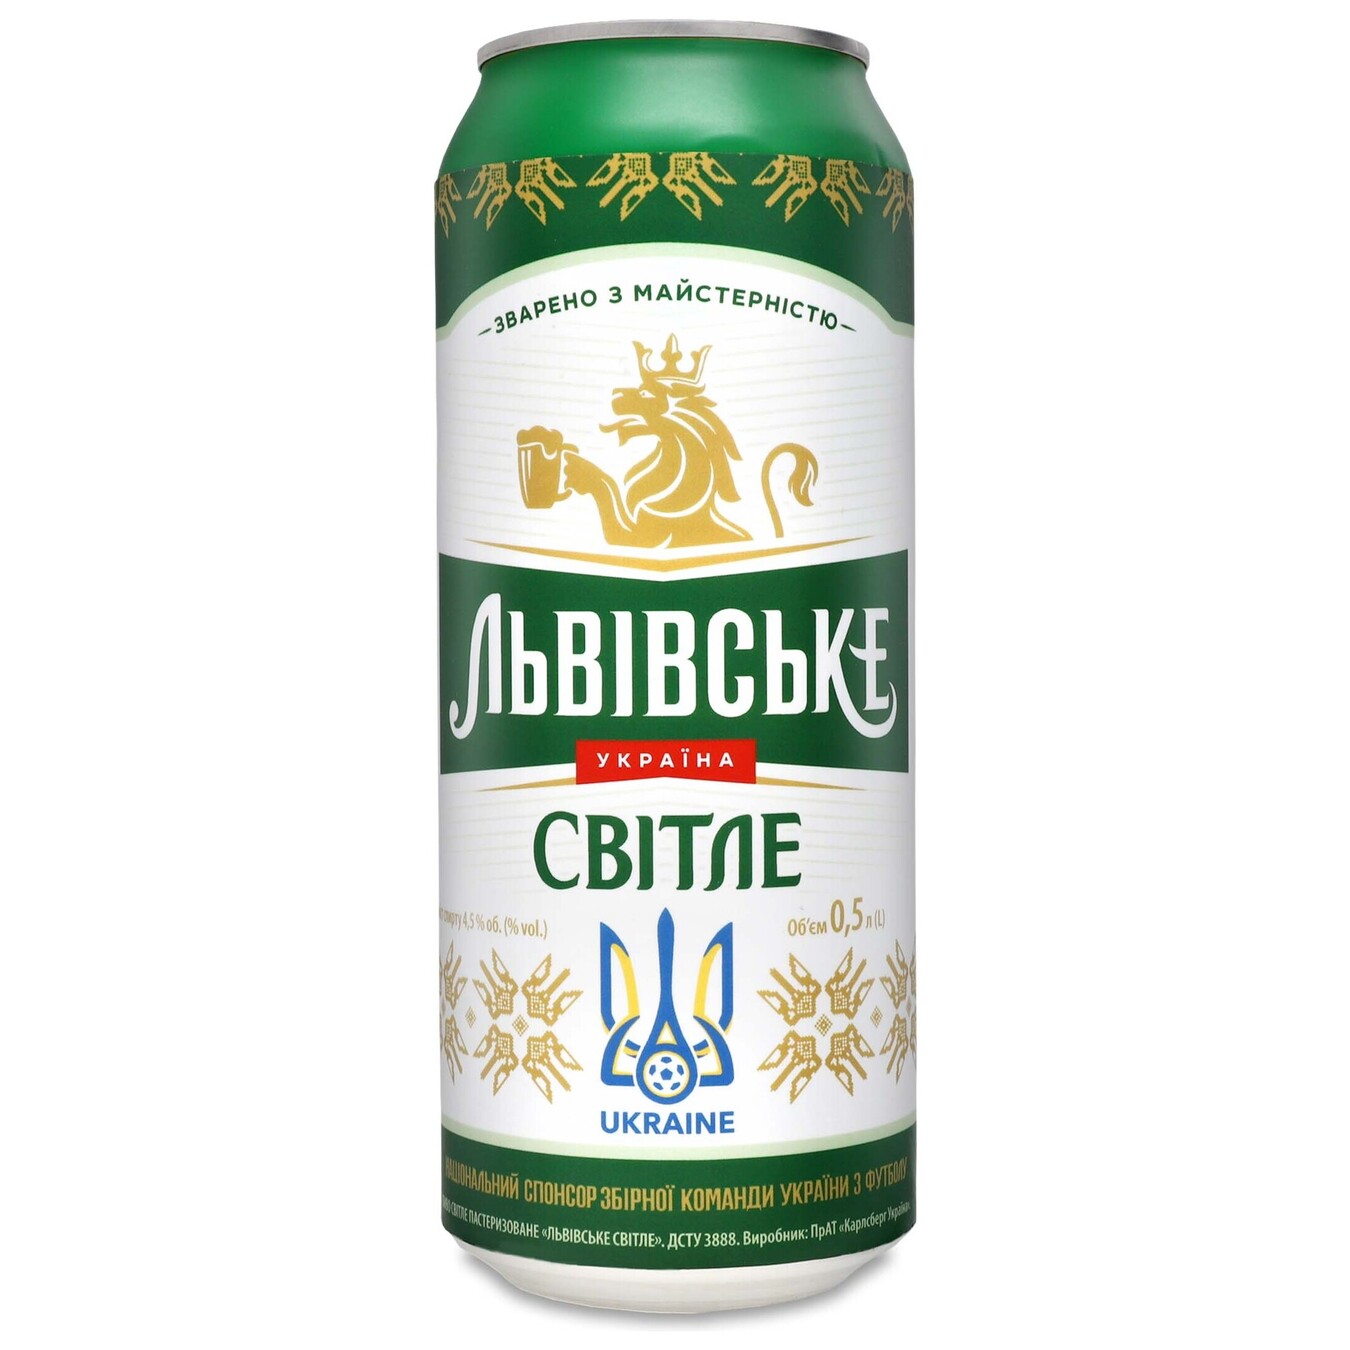 Lvivske light beer 4,5% 0,5l